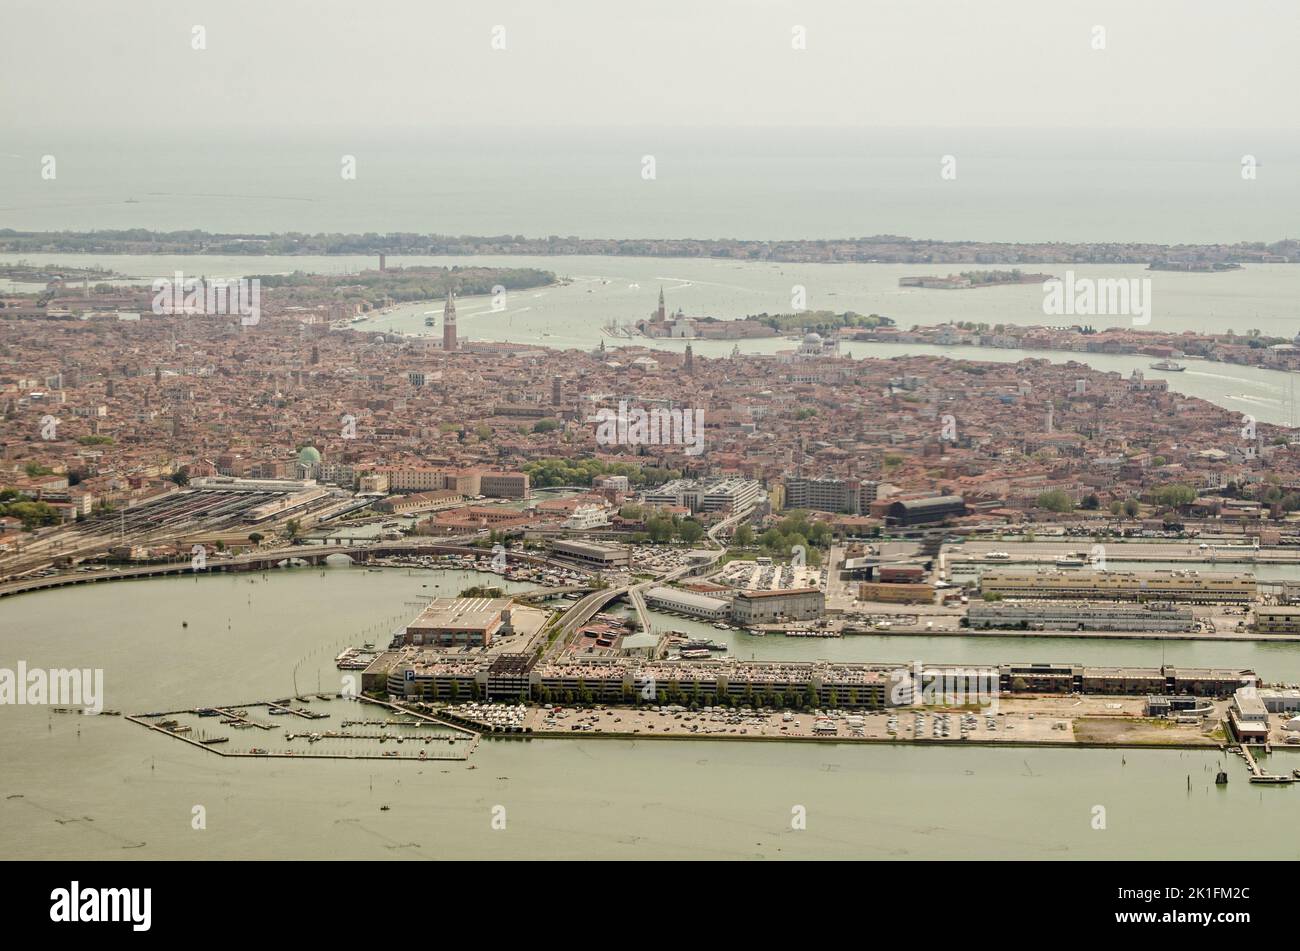 Vista desde un avión mirando al Puerto de Venecia con la isla Tronchetto al fondo y el Lido hacia la parte superior. Foto de stock